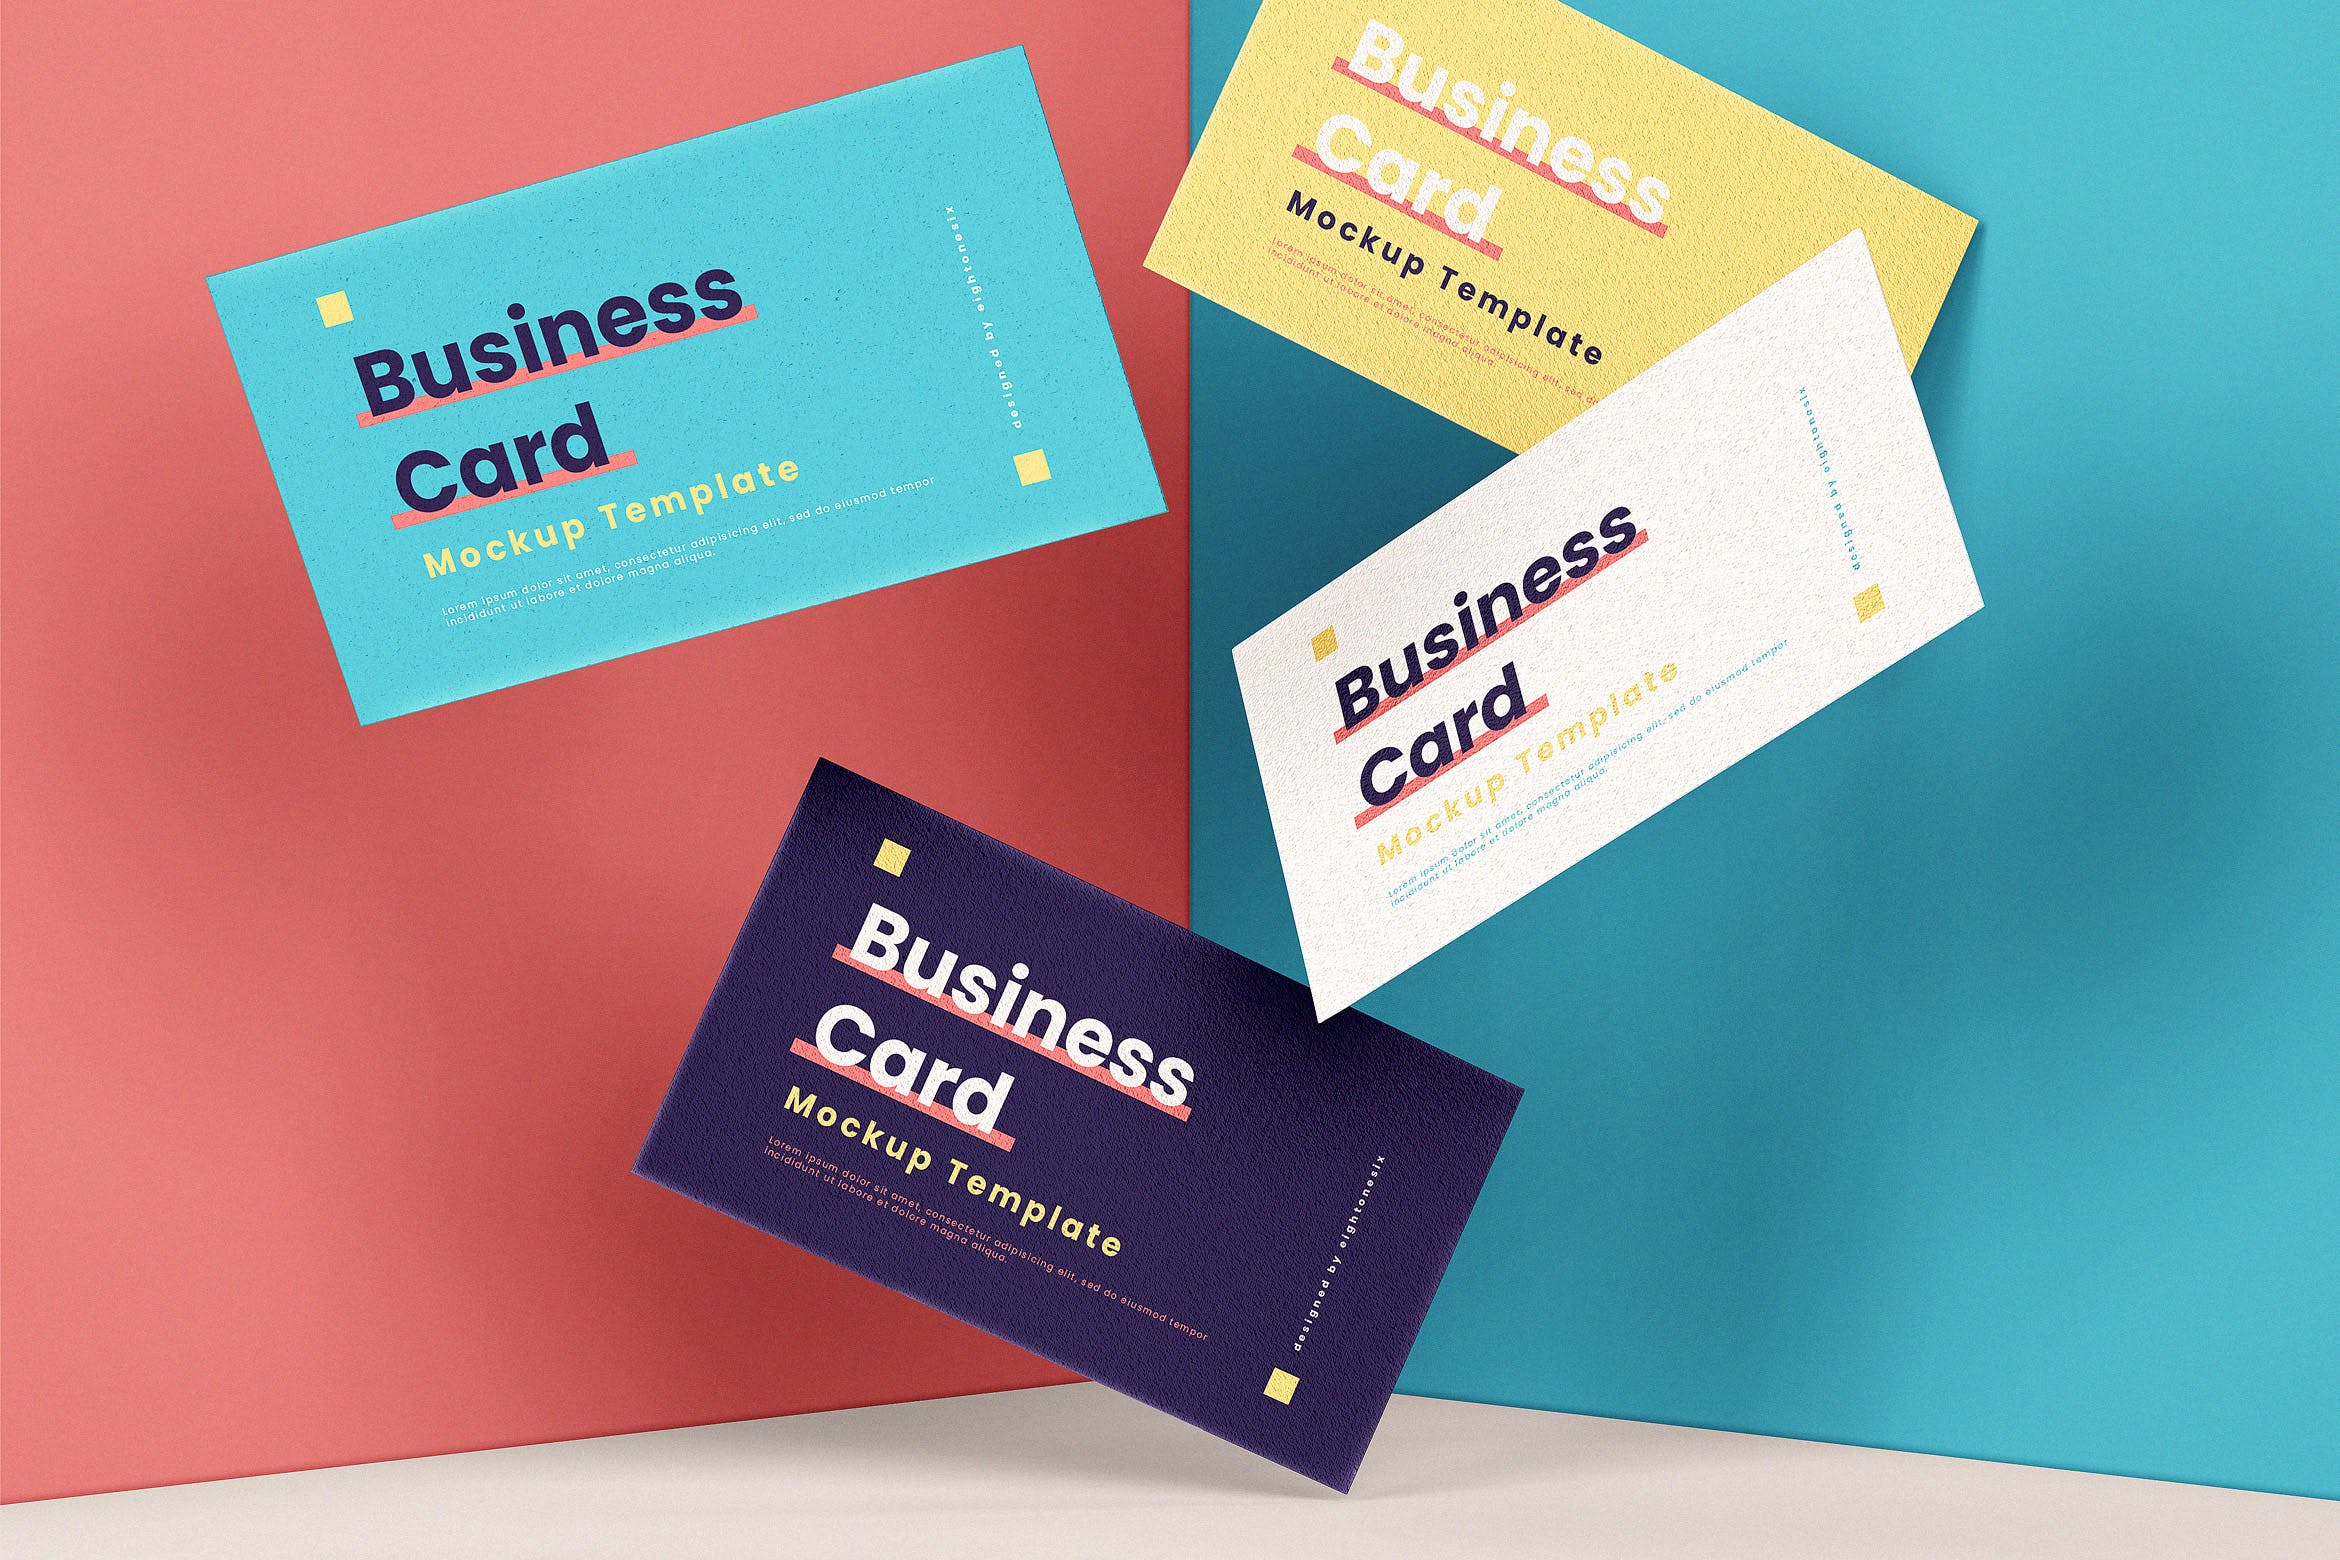 企业名片悬浮效果图第一素材精选模板 Business Card Mock-Up Template插图